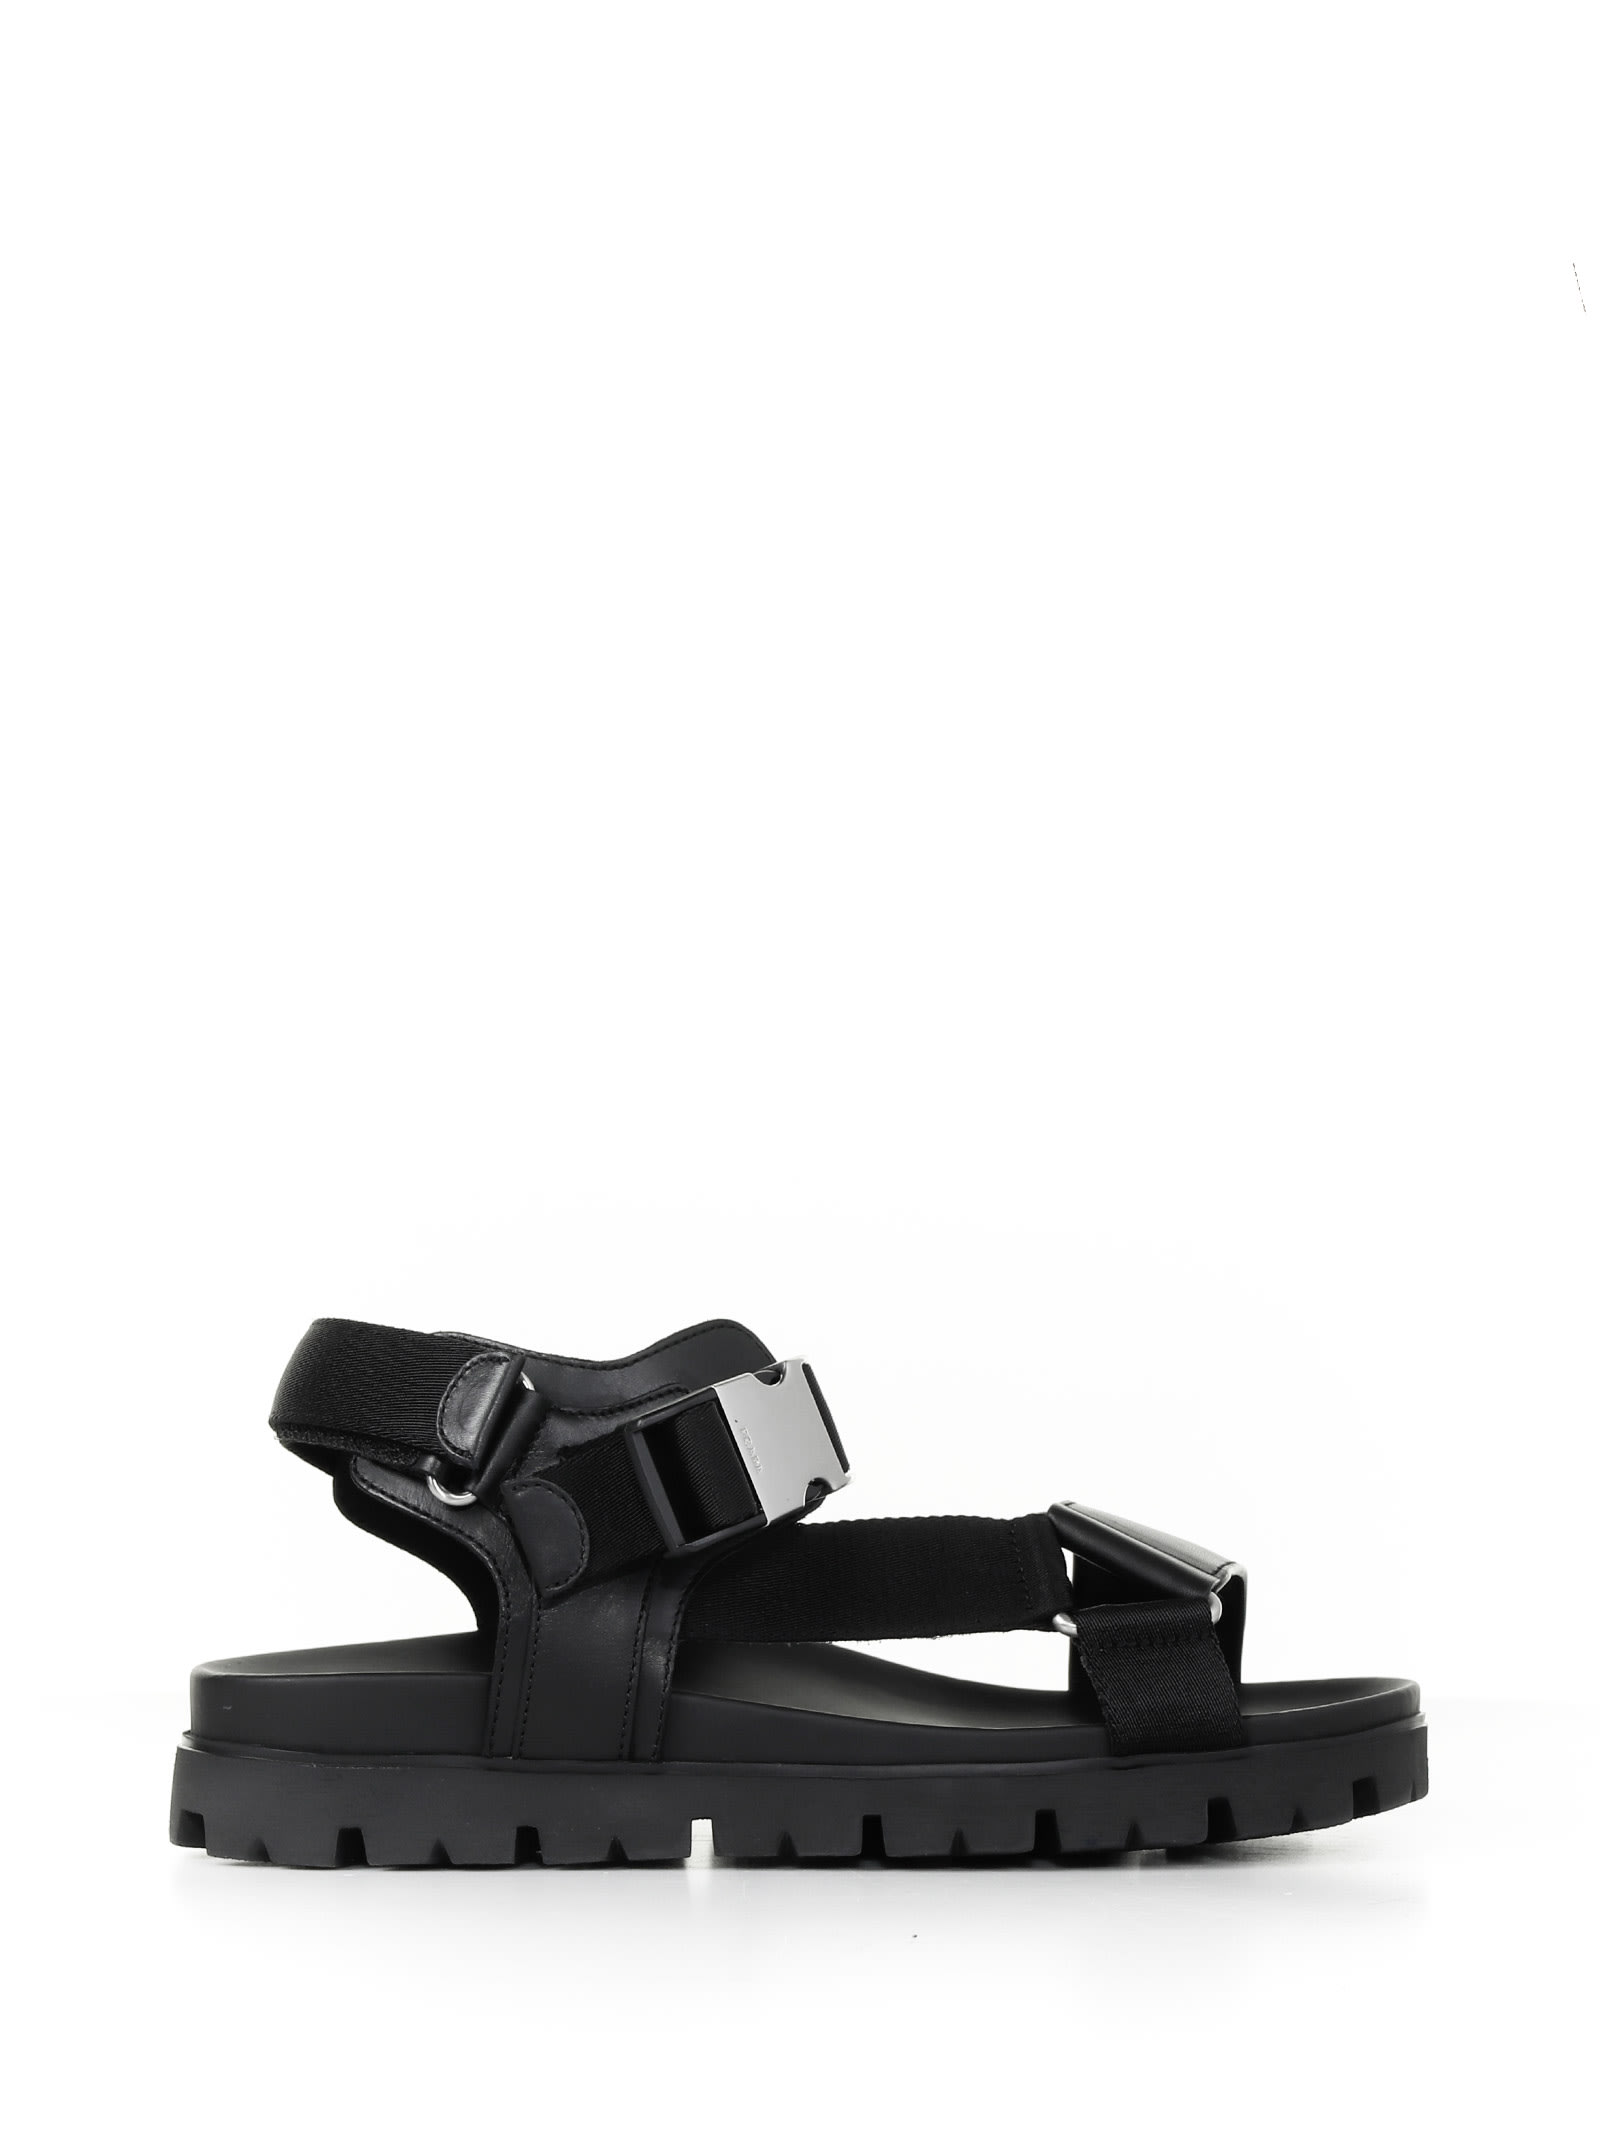 Prada Sandals In Black Leather